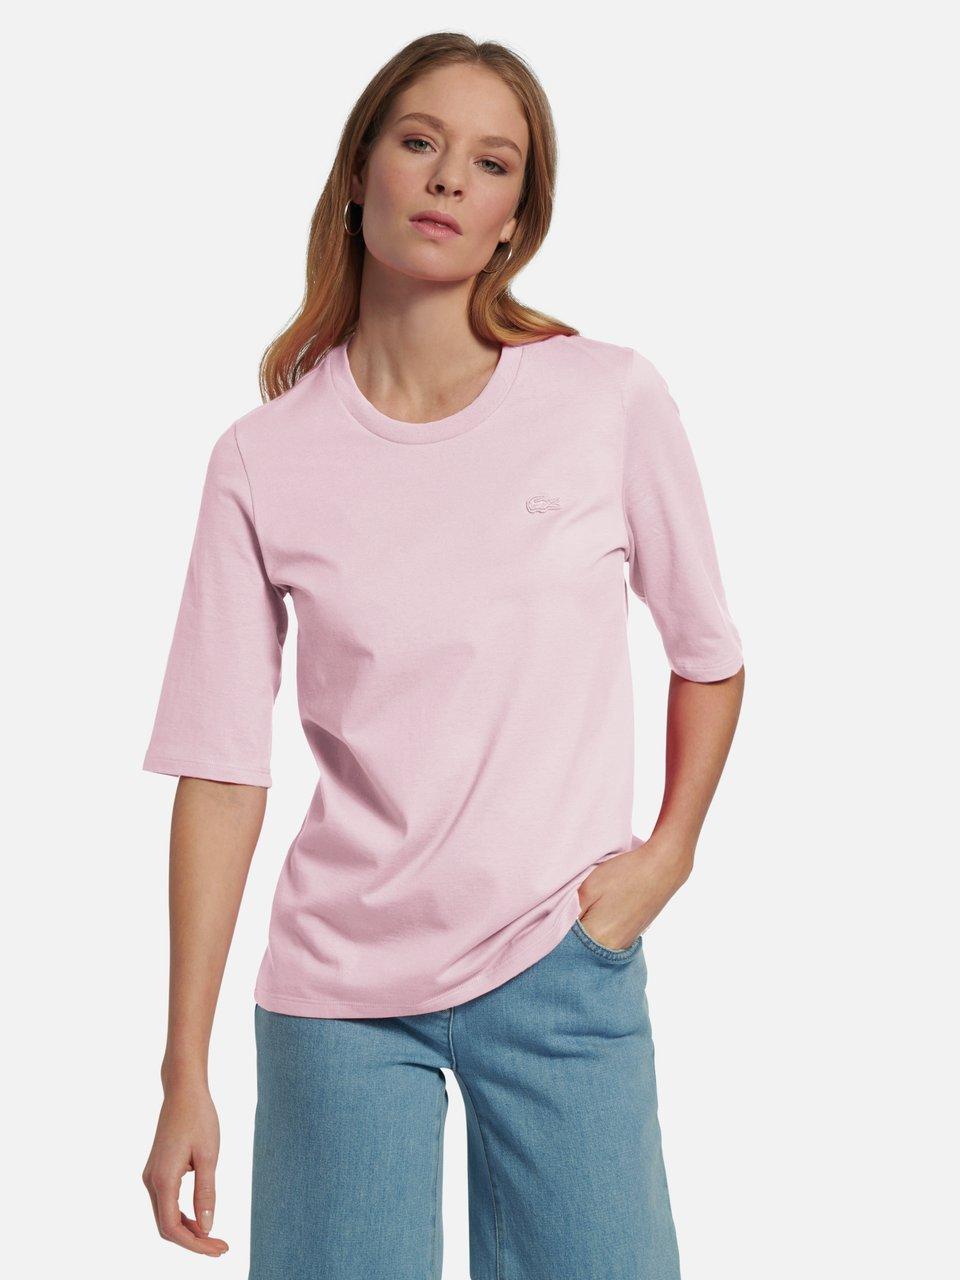 Online-Shop Rosée Peter Hahn kaufen im t-shirts Damen